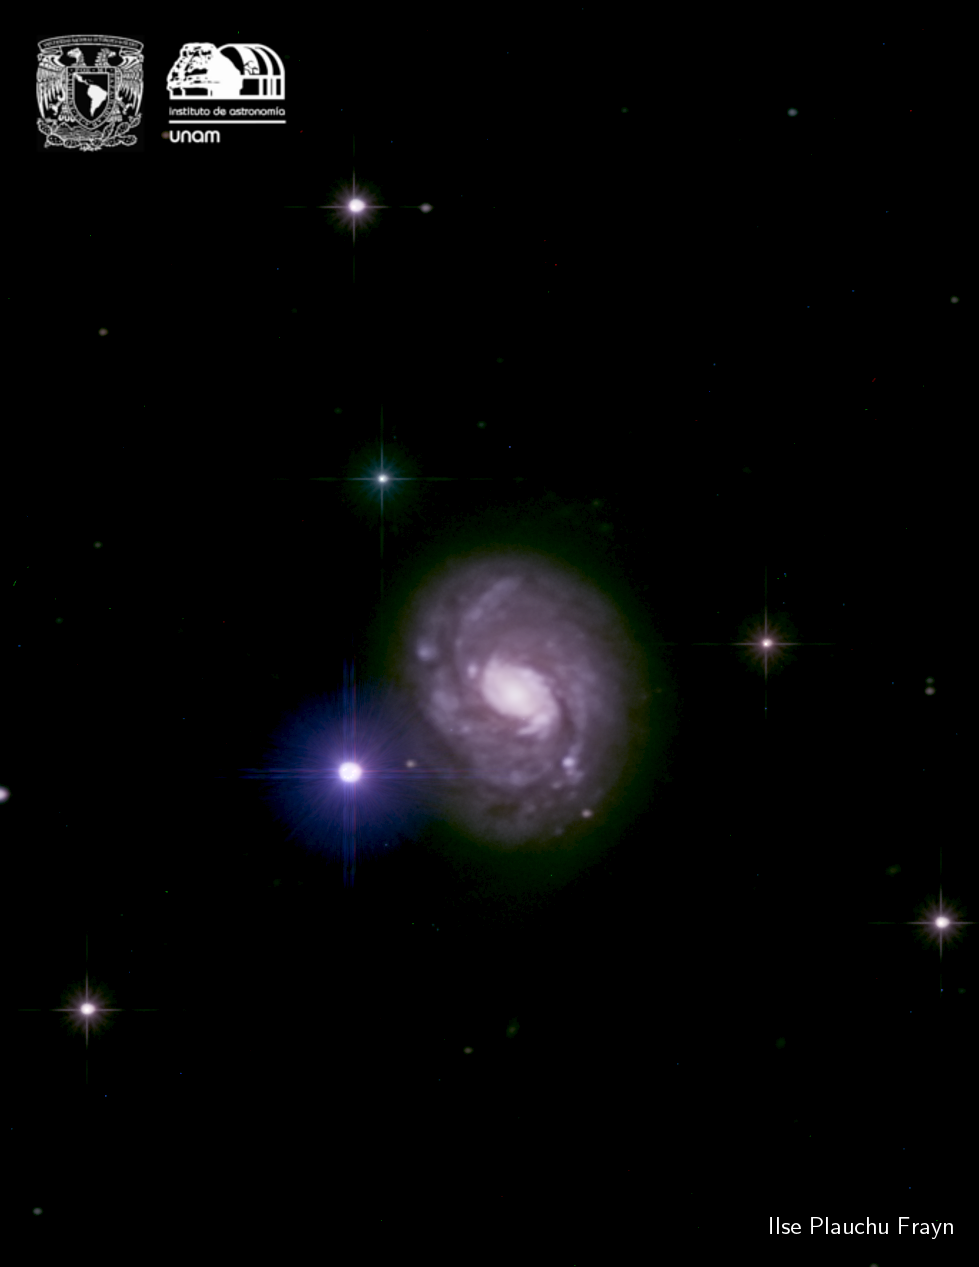 Messier 77